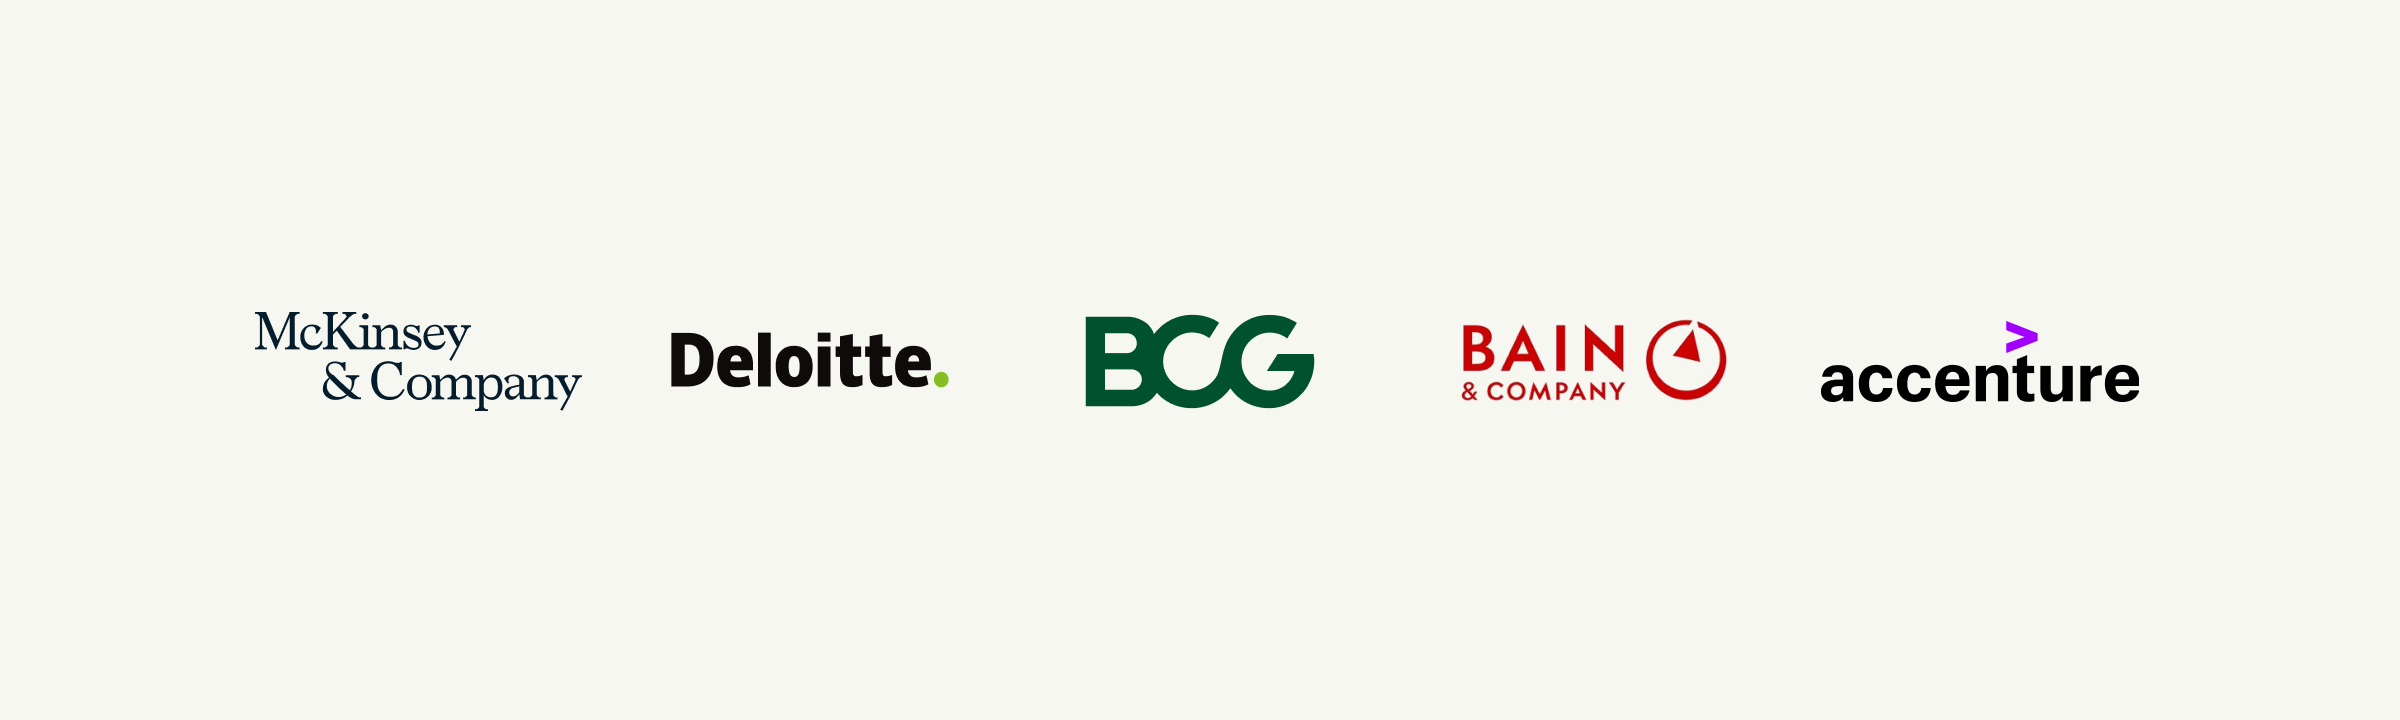 Logos of McKinsey, Deloitte, BCG, Bain, and Accenture